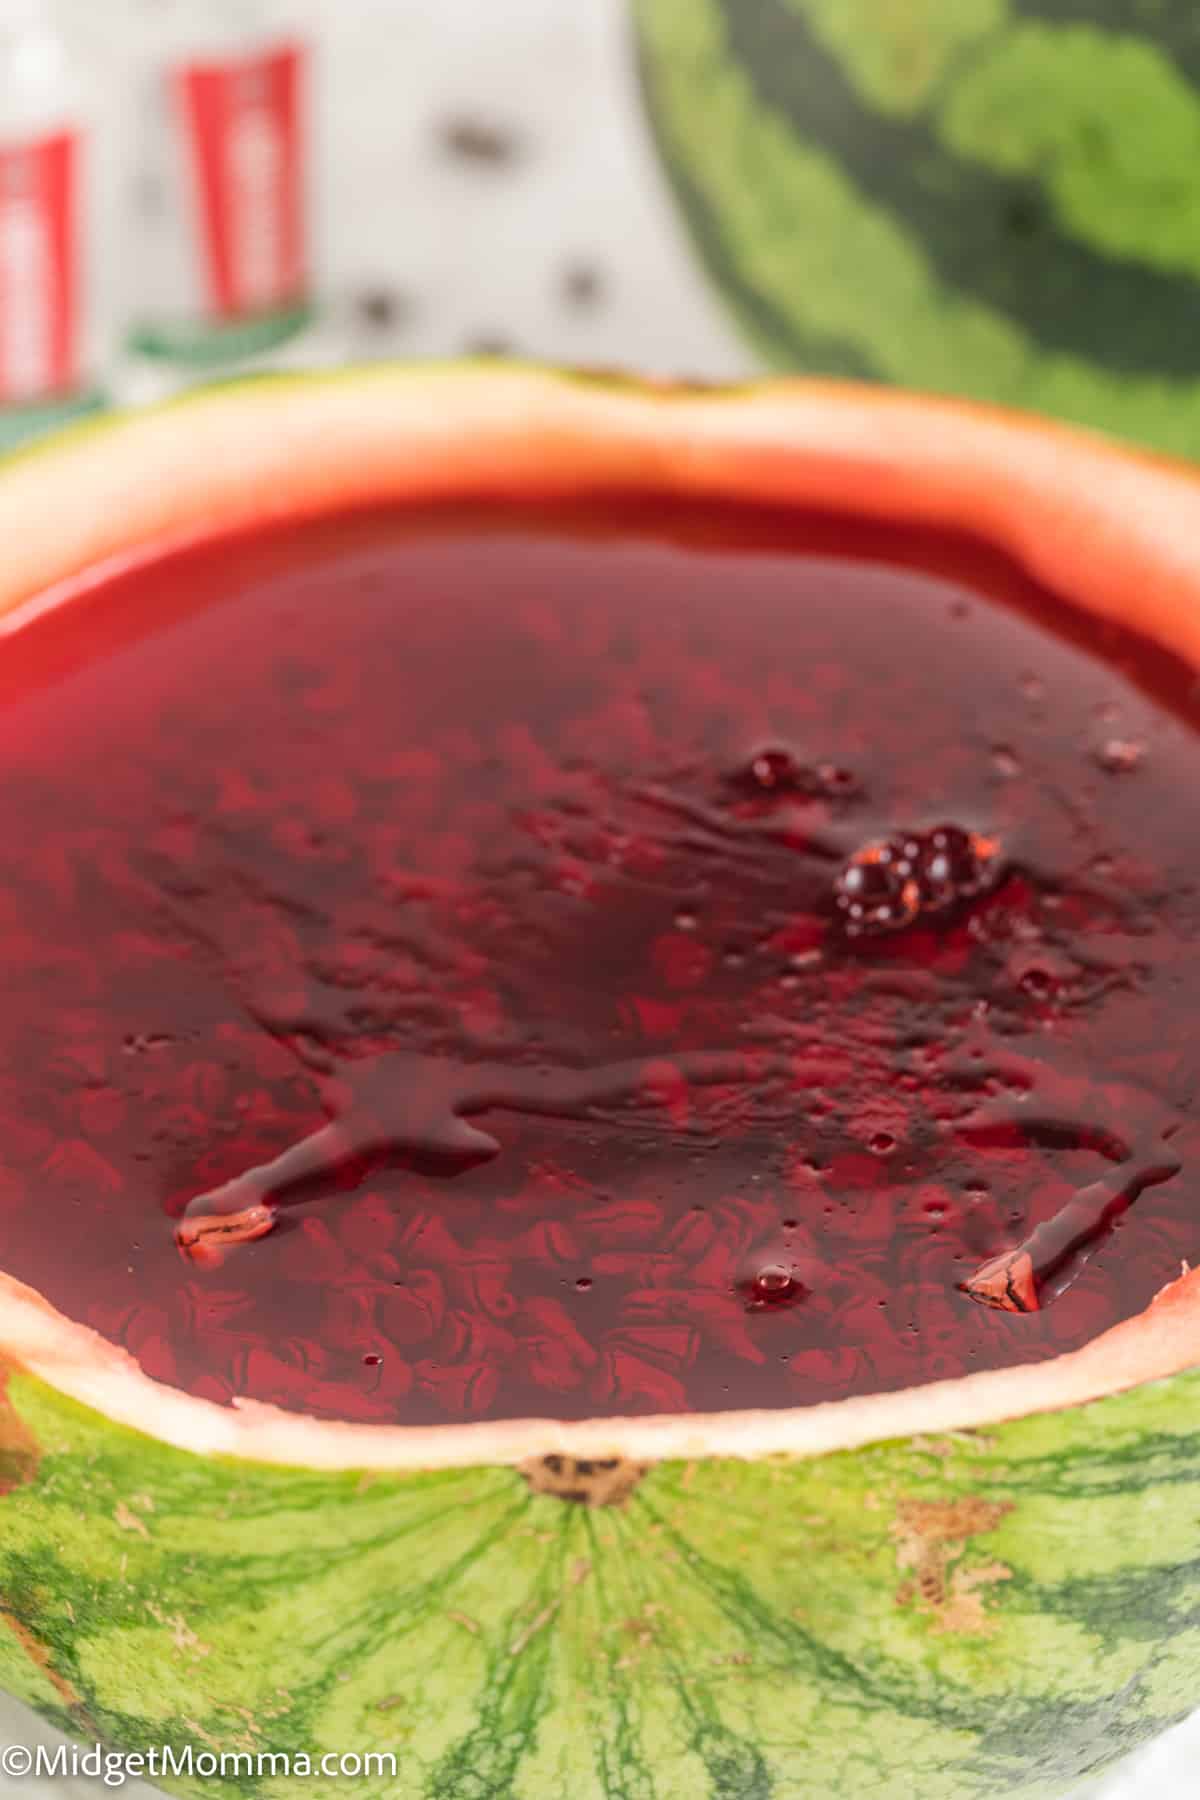 Easy Watermelon Slices Jello Shots Recipe